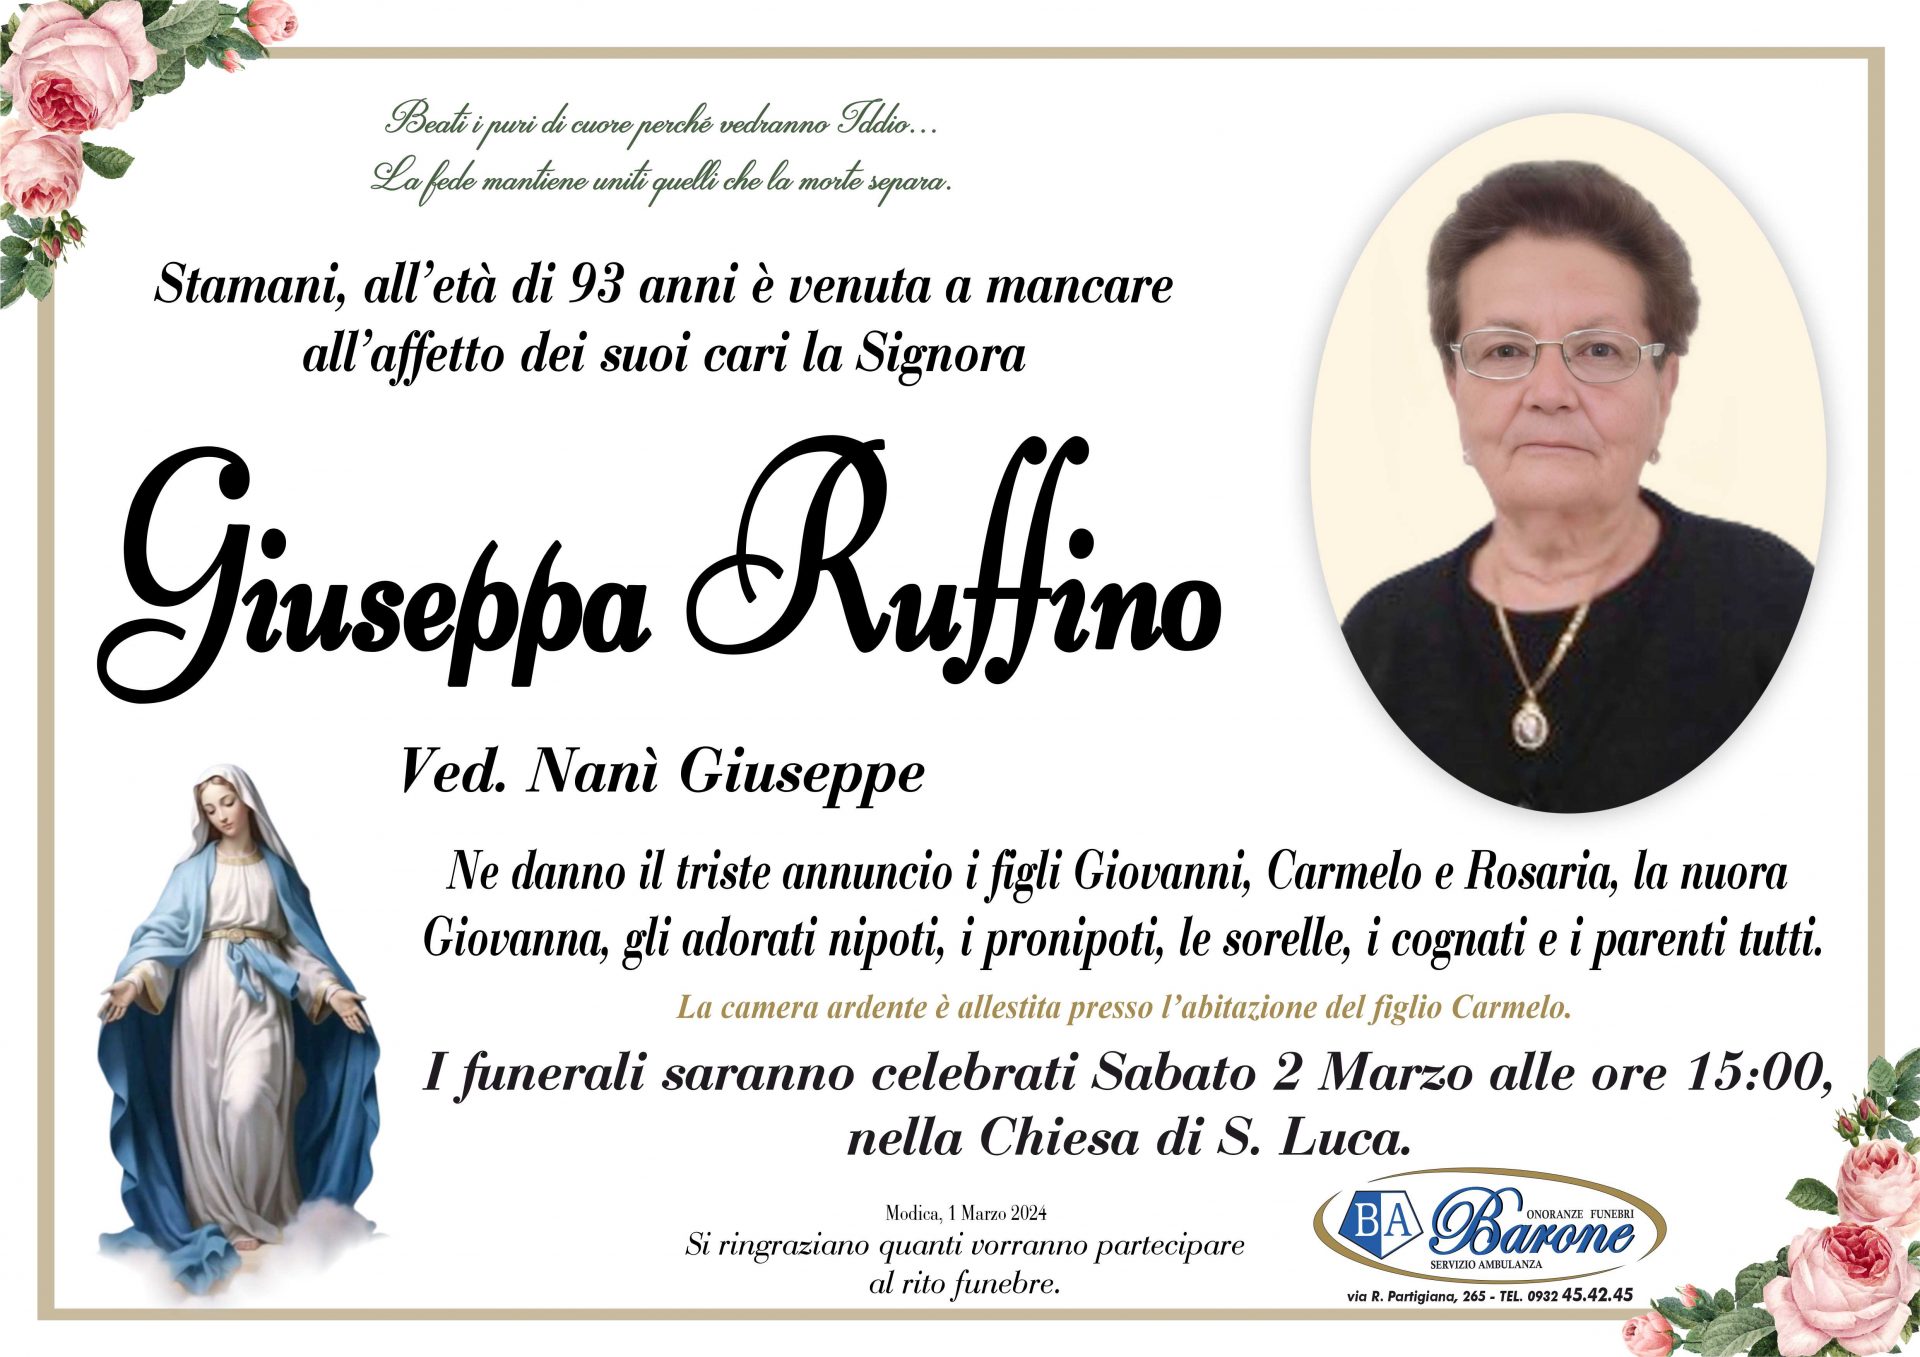 Giuseppa Ruffino